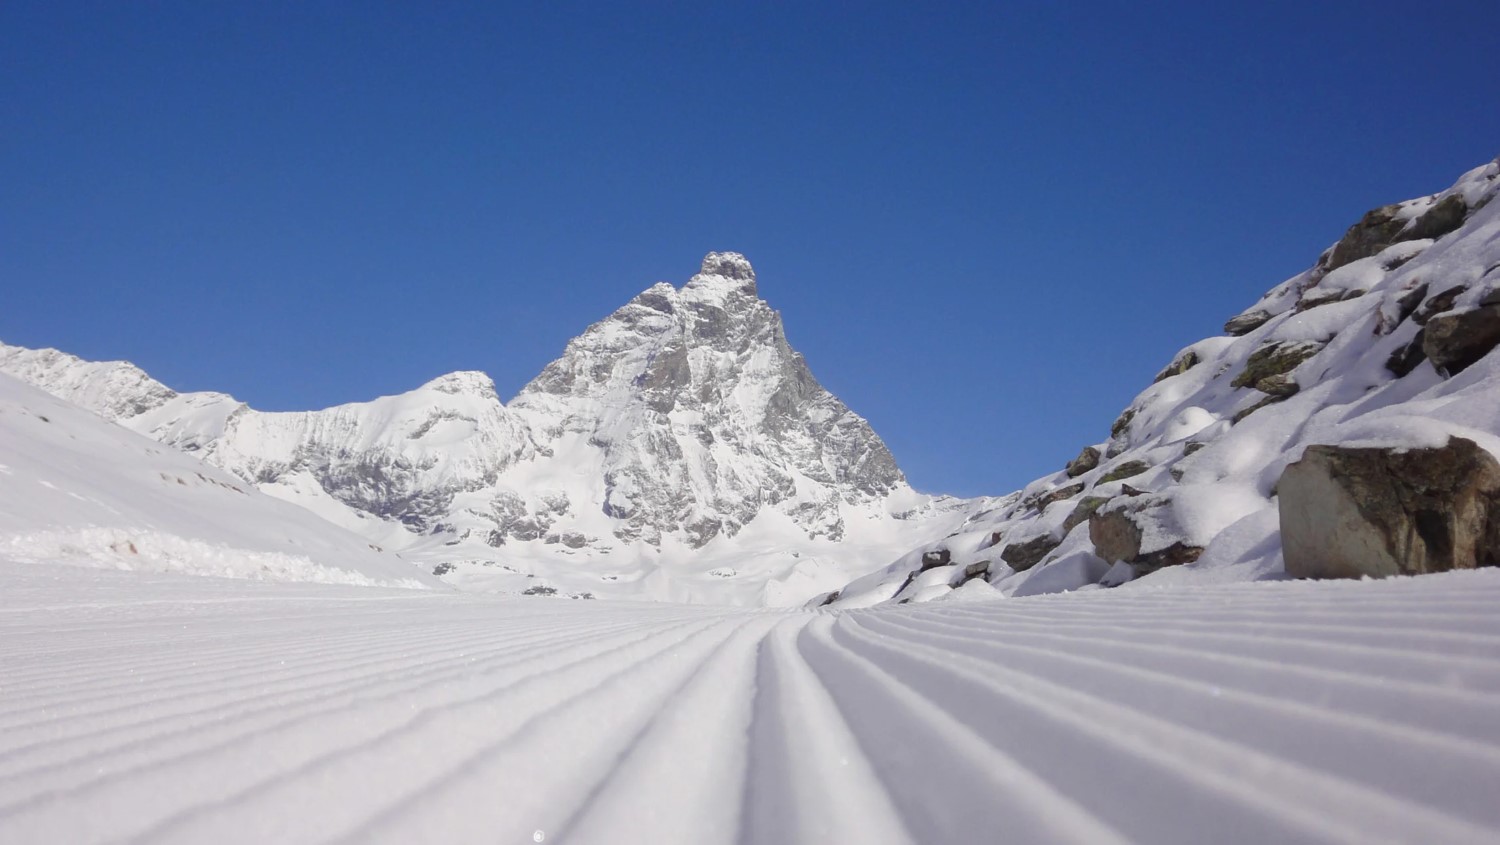 Zermatt quiere entrar en la Copa del Mundo con la pista de descenso más larga y alta del mundo